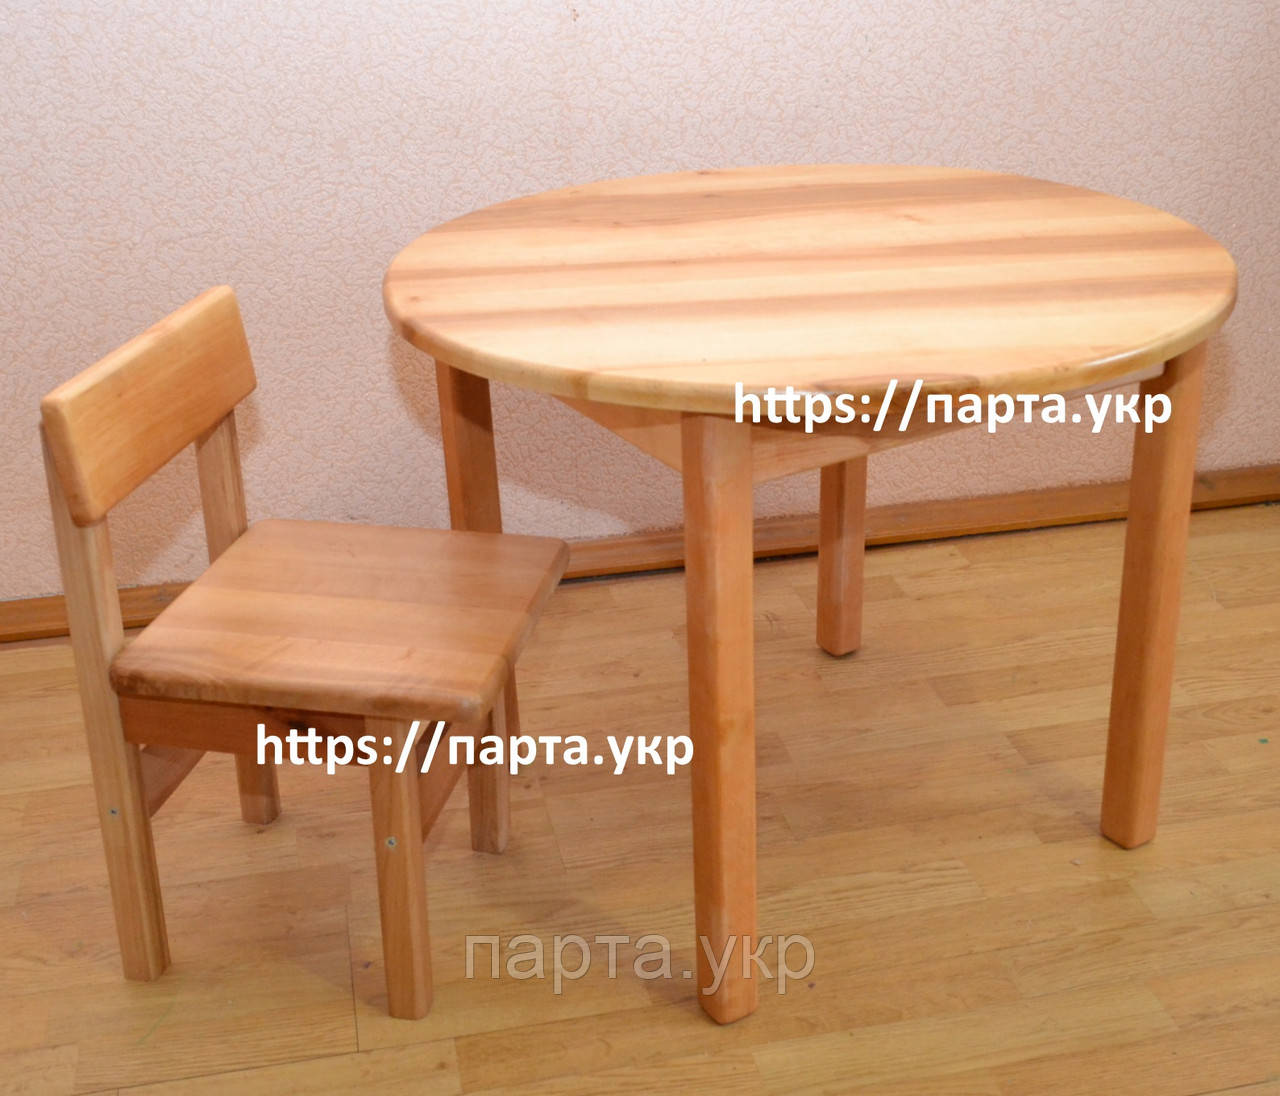 Дитячий дерев'яний столик з круглою стільницею і стілець, фото 1